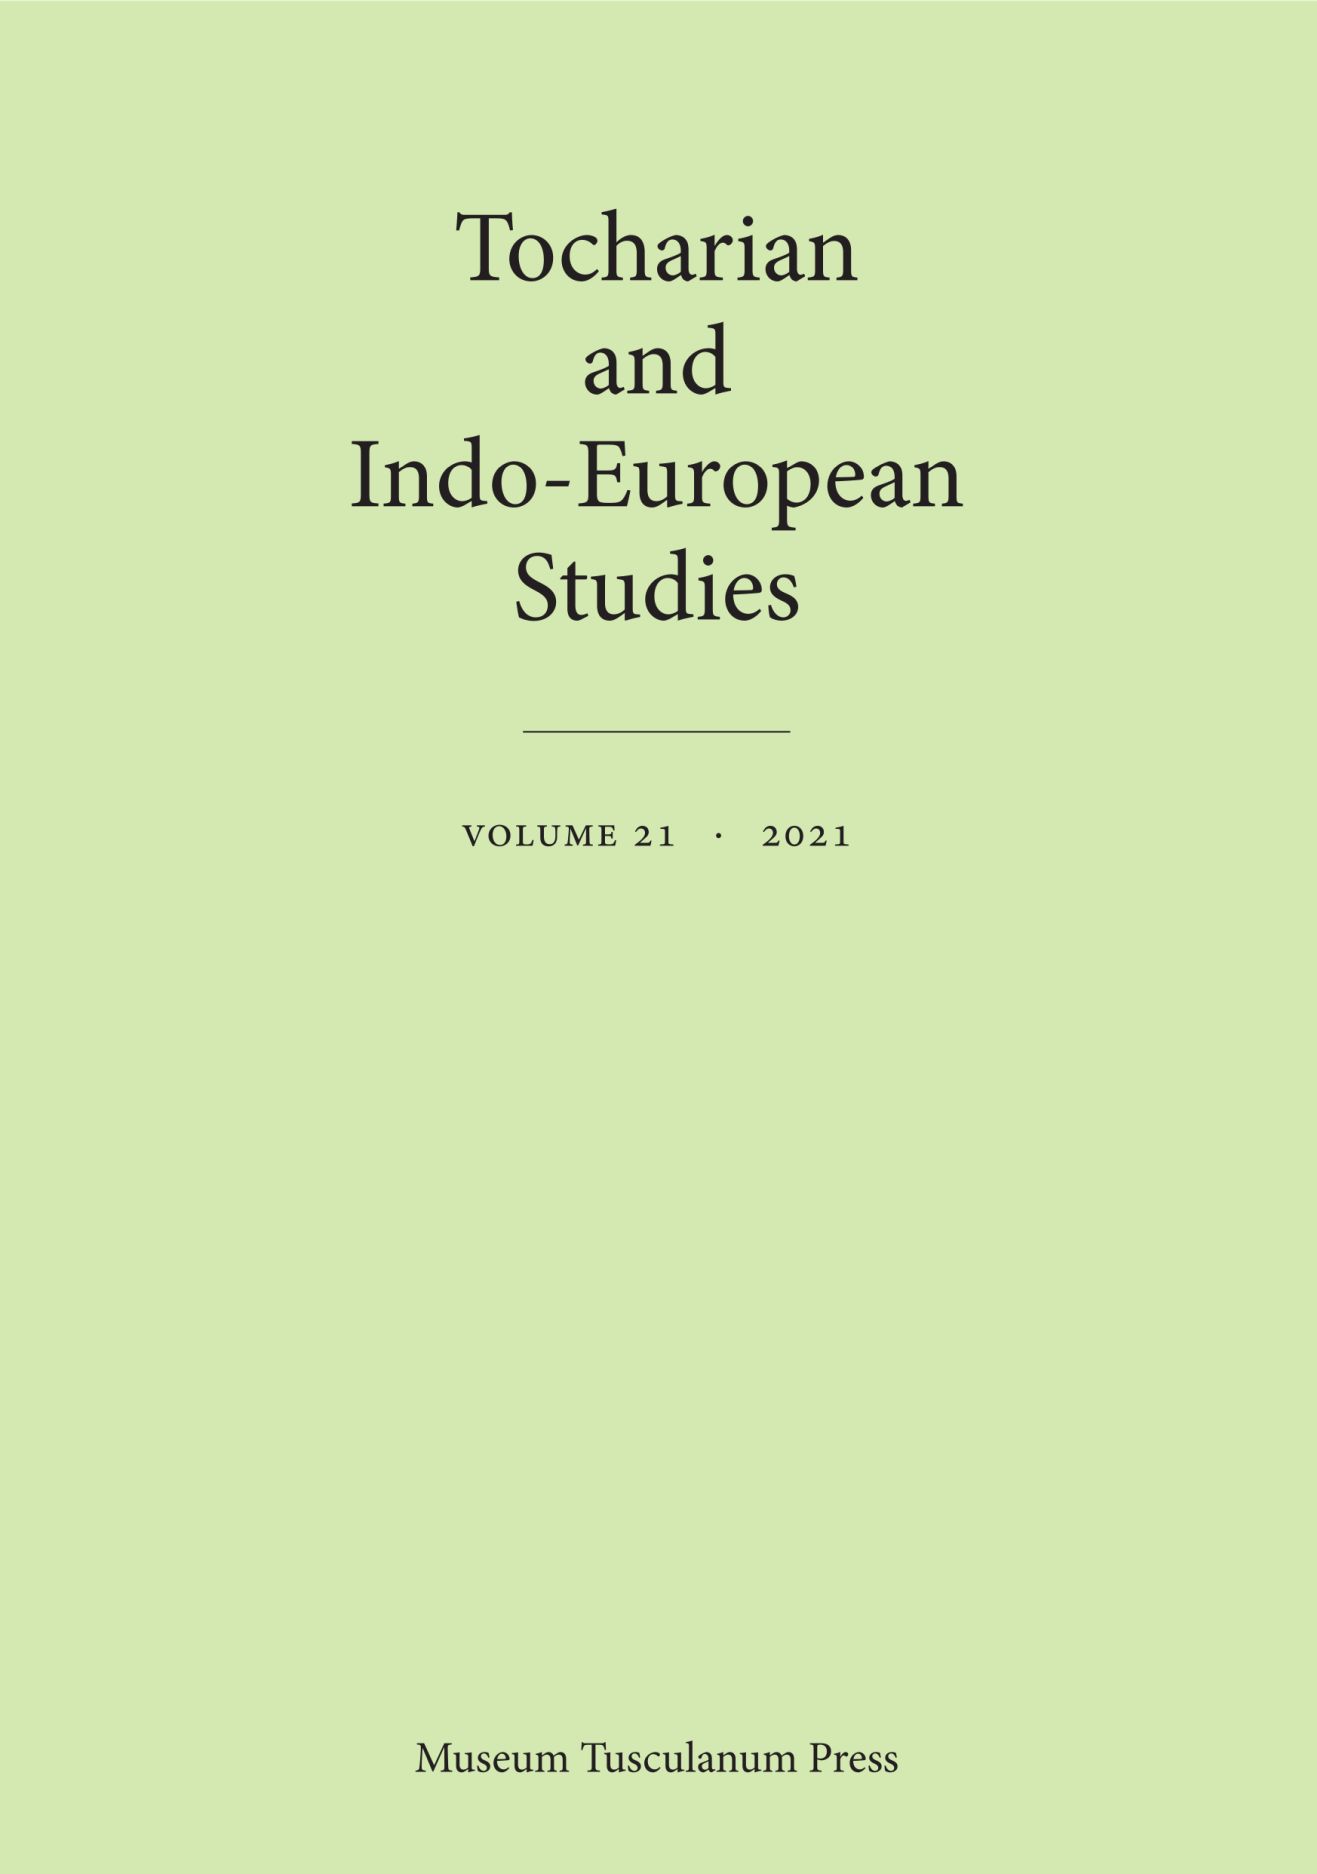 Tocharian and Indo-European Studies 21, Olsen, Fellner, Peyrot